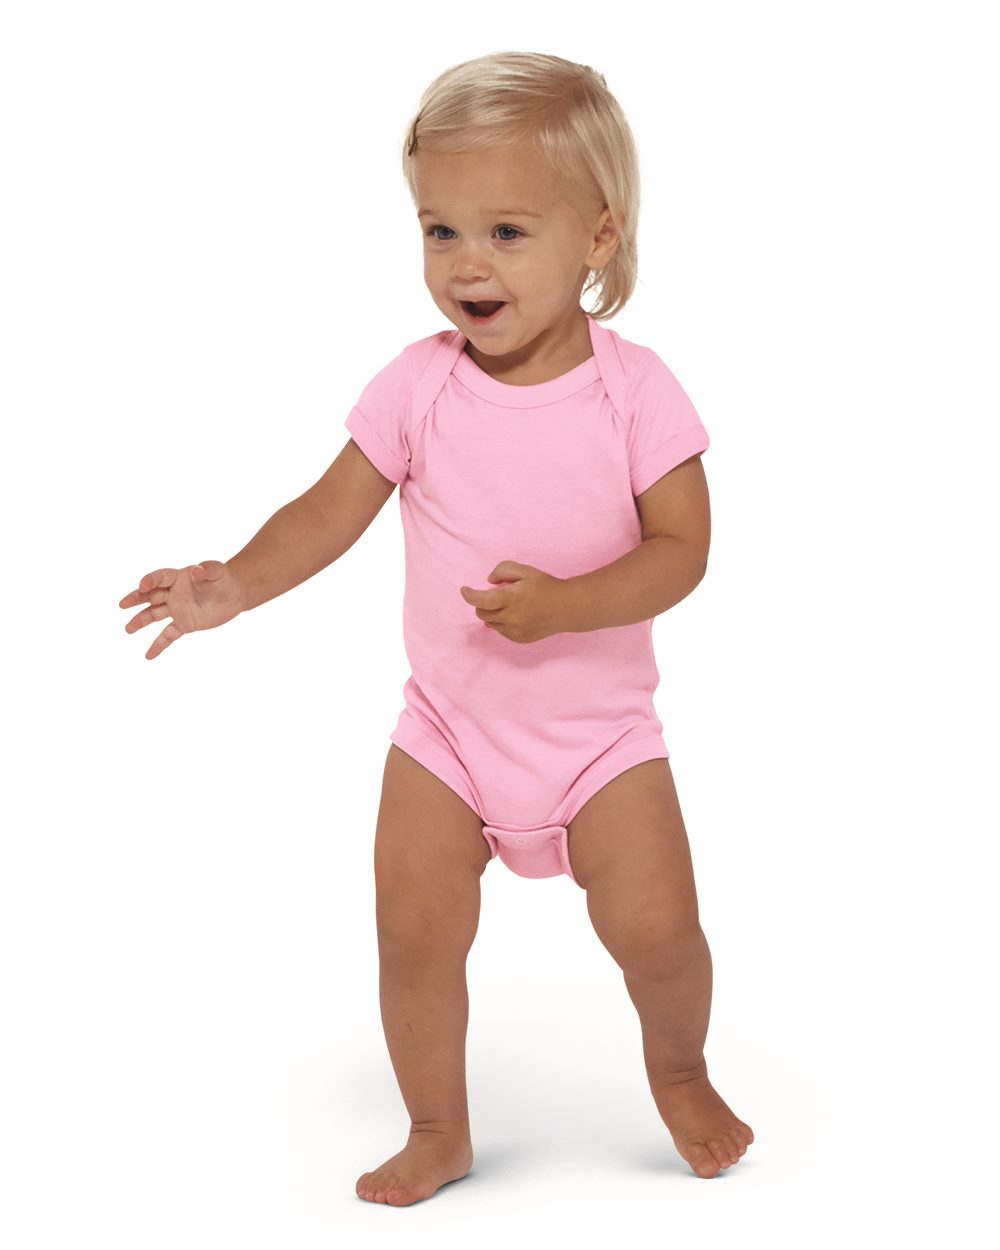 custom-printed-infant-baby-onesie